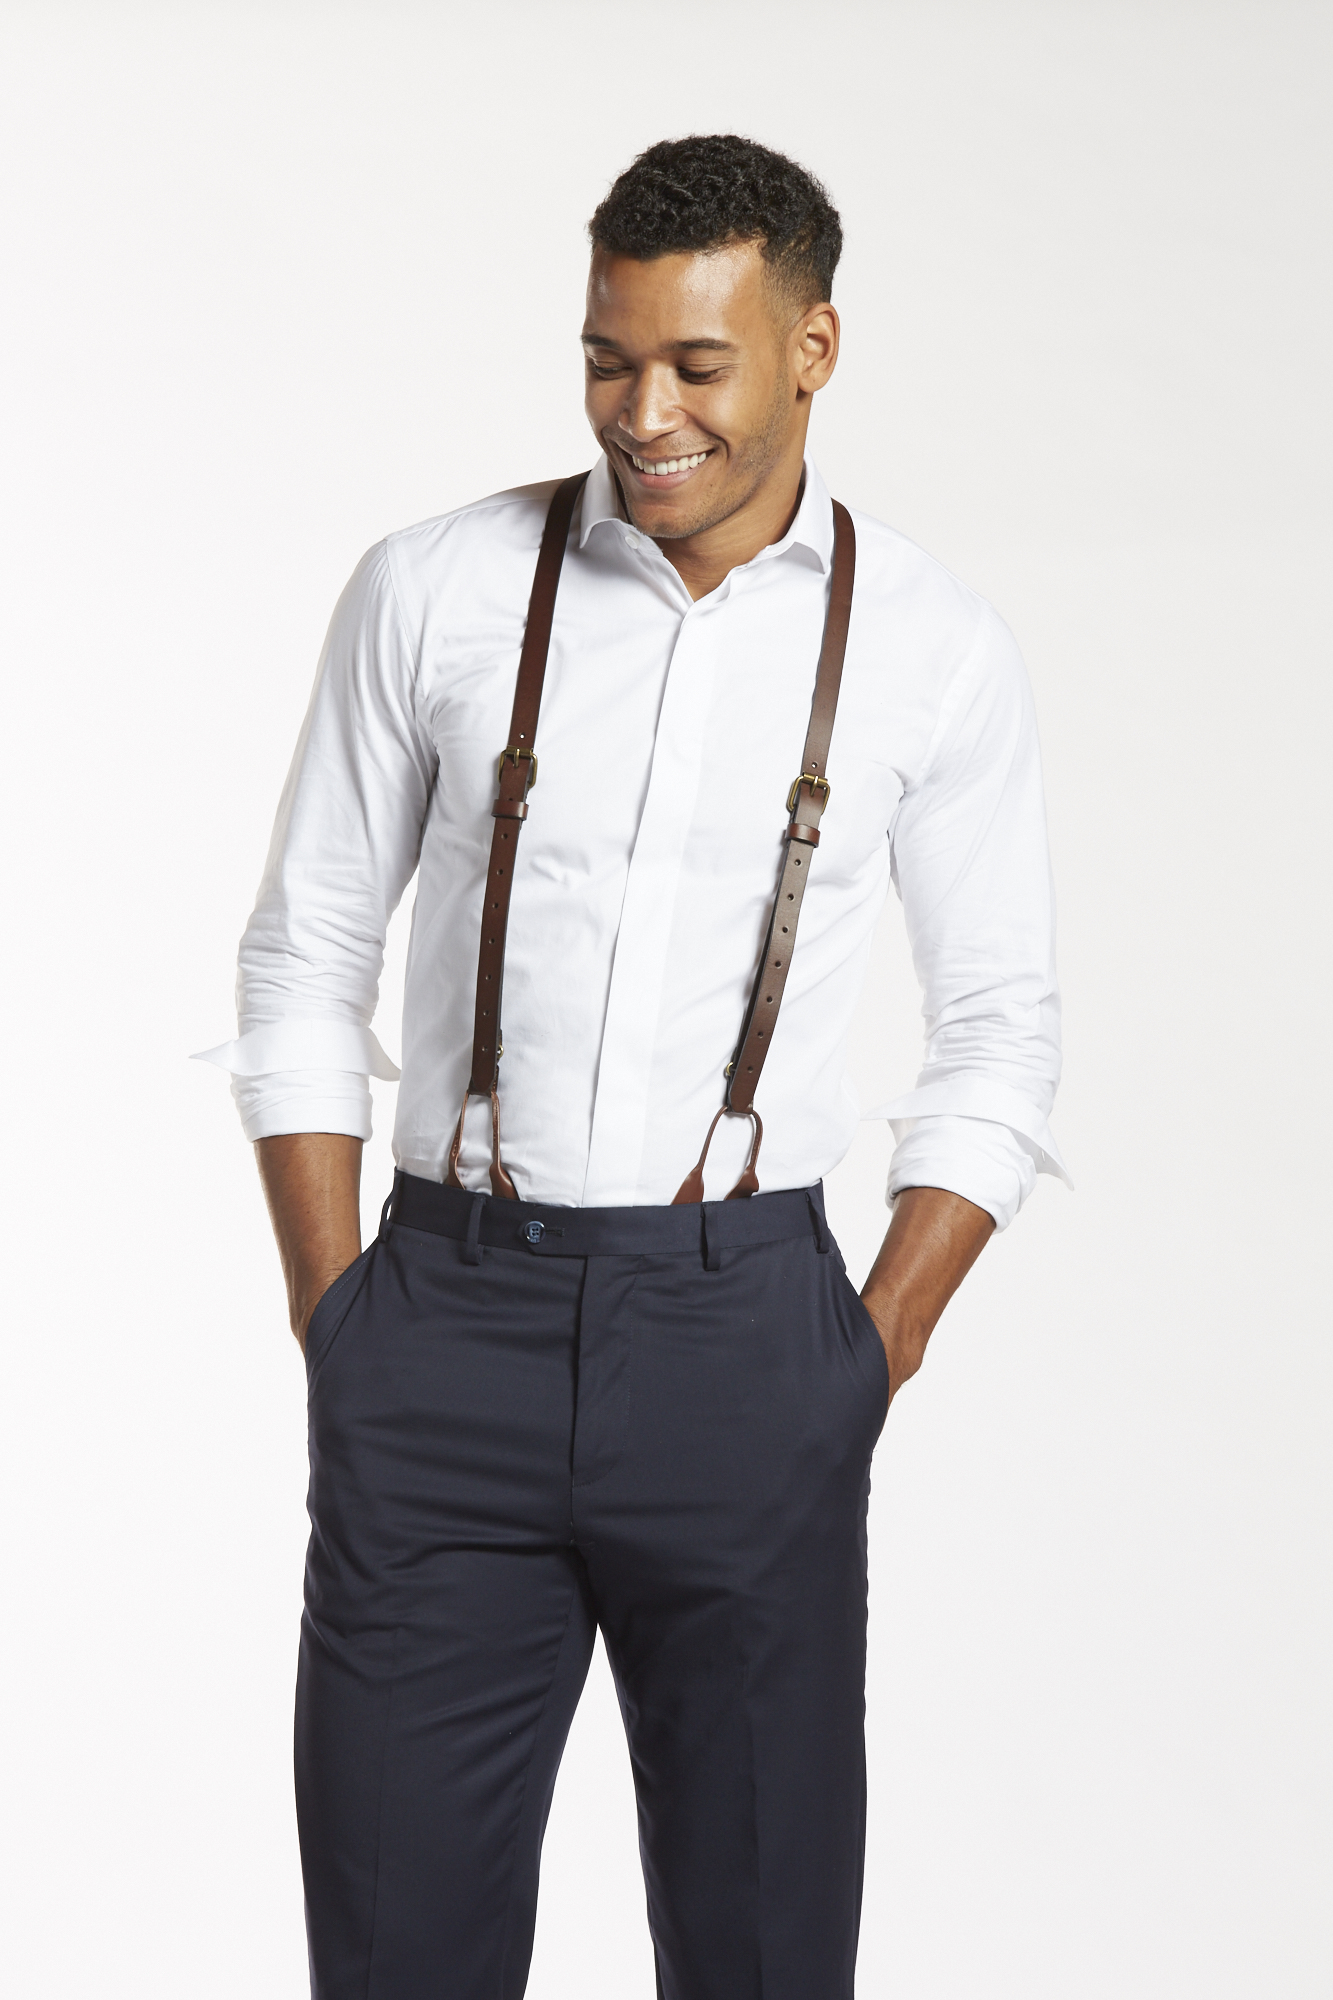 Shoulder Straps 4 Clips Suspenders Belt Adjustable Jacquard Yback  Suspenders For Pants